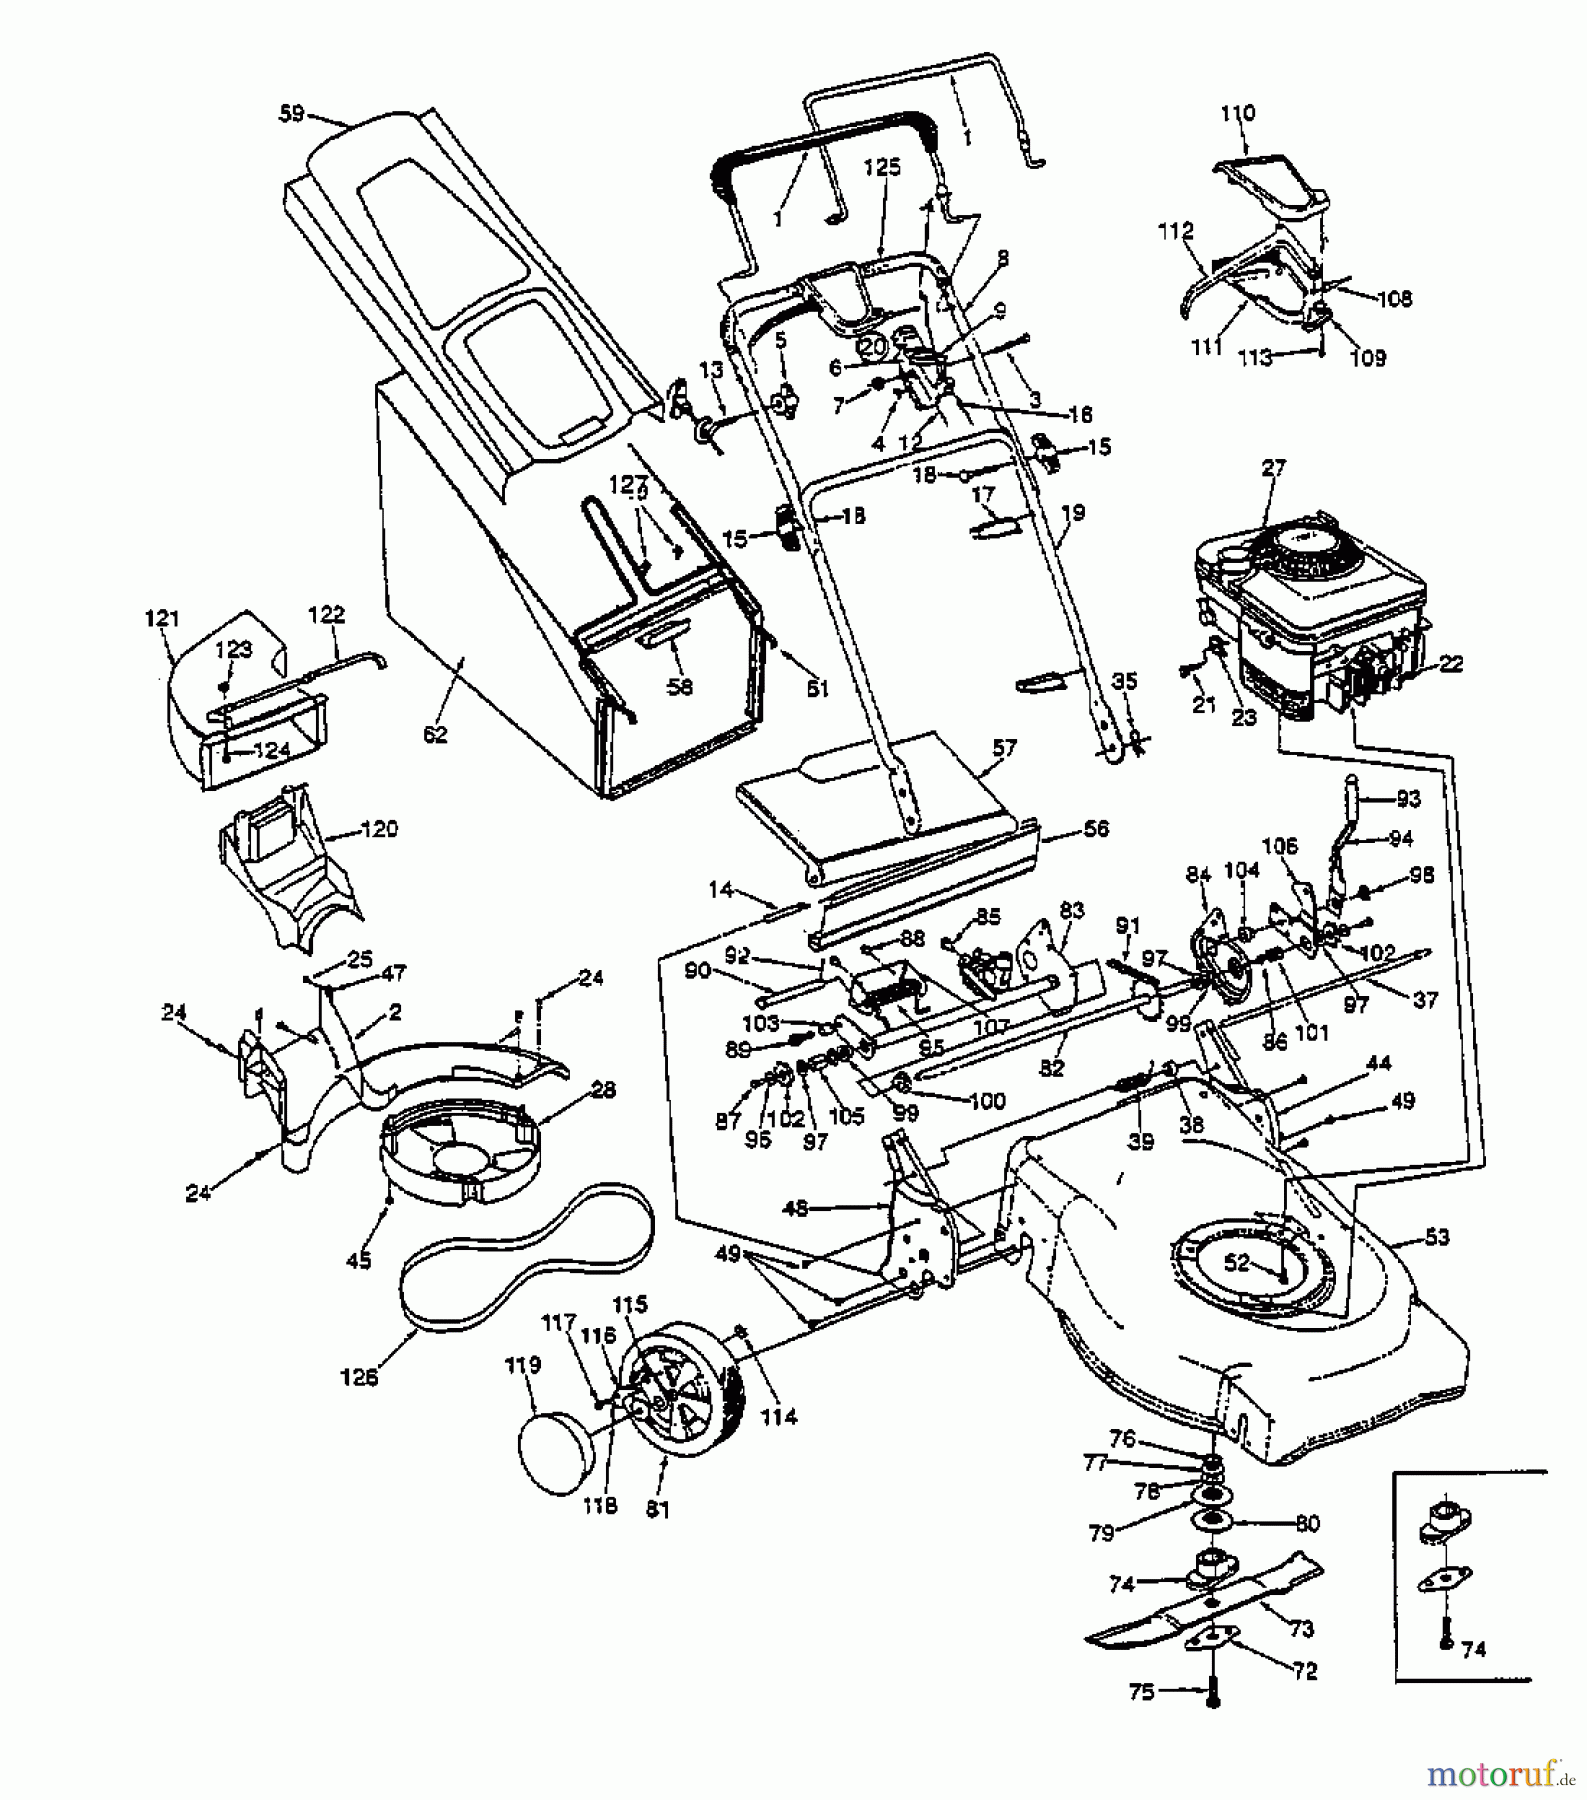  White Petrol mower self propelled RD-21 E 12AE378O679  (1998) Basic machine